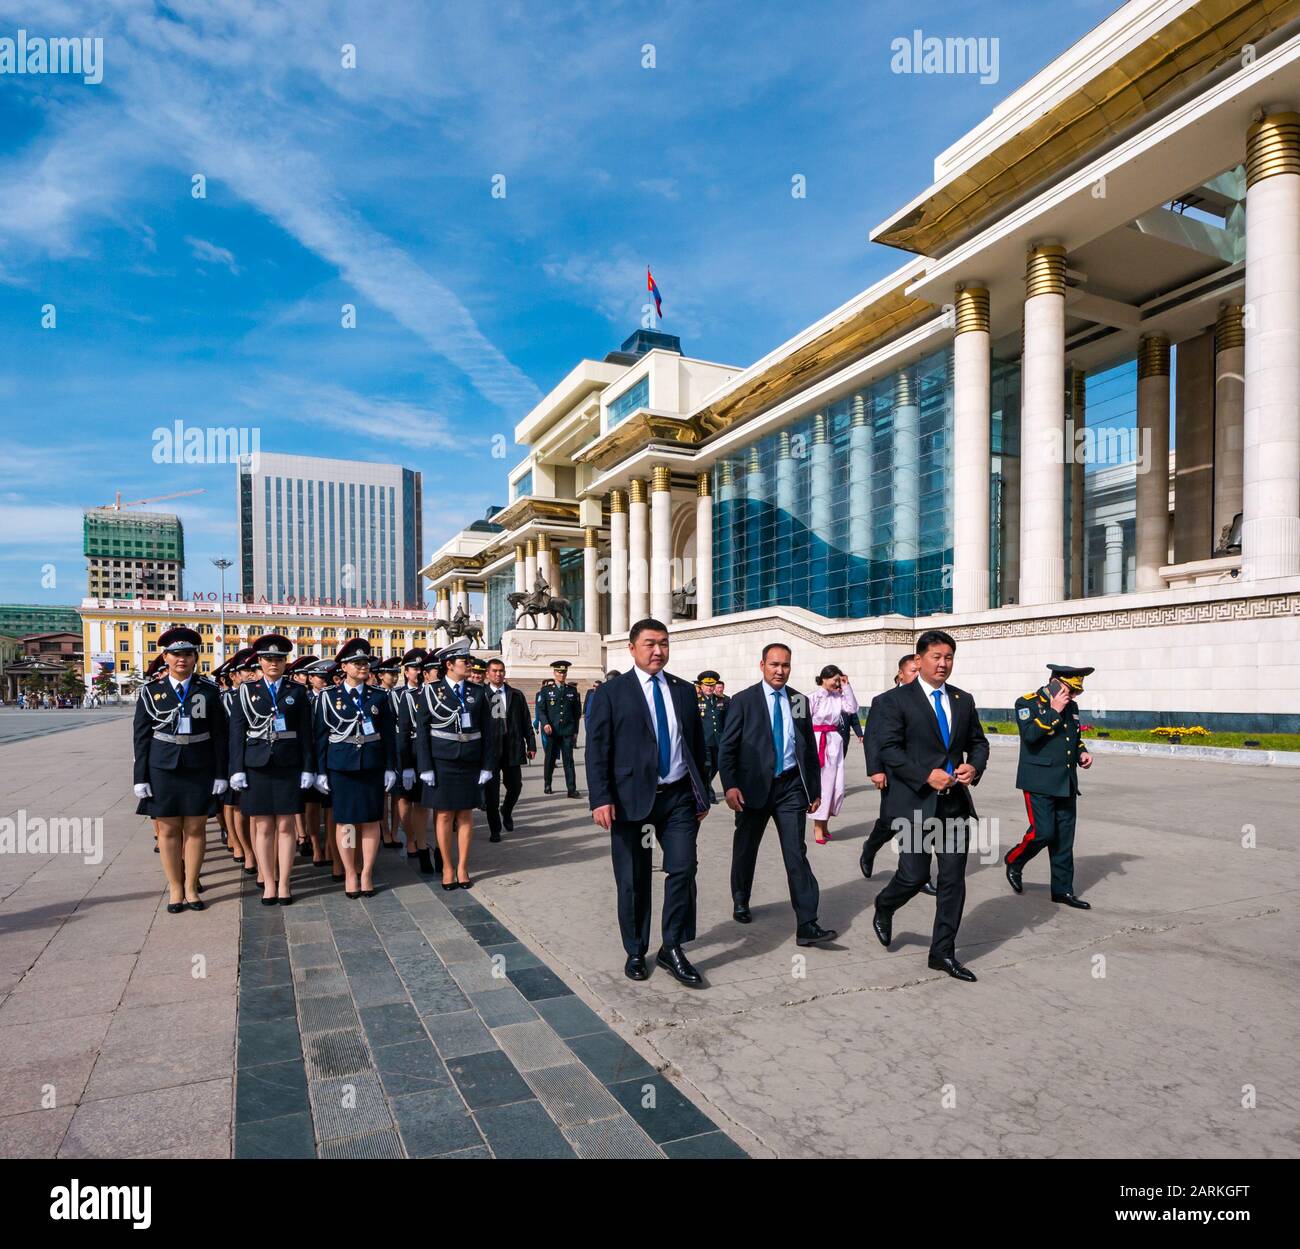 Des officiers de police de sexe féminin ont défilé lors d'une cérémonie avec Ukhnaagiin Khurelsukh, Premier ministre, Palais du gouvernement, place Sükhbaatar, Oulan-Bator, Mongolie Banque D'Images